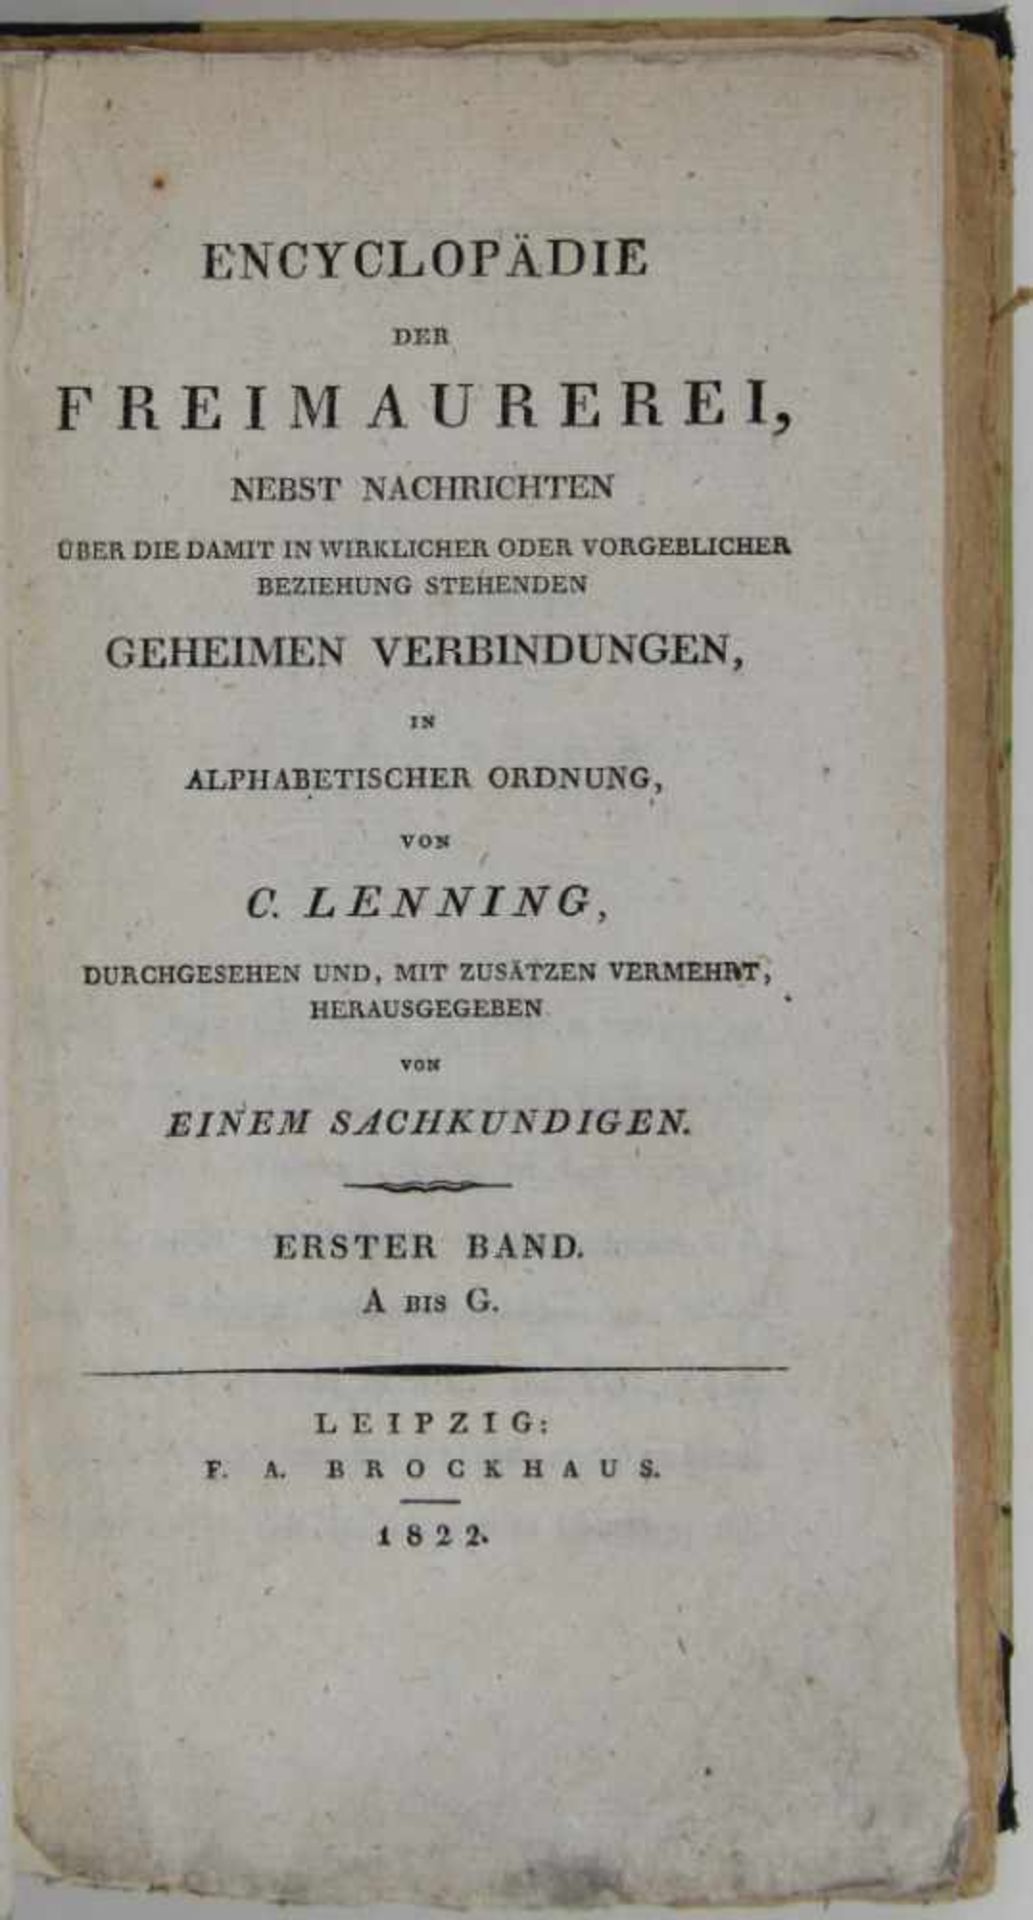 Freimaurerei. -Lenning, C. (d. i. Hesse):Encyclopädie der Freimaurerei, nebst Nachrichten über die